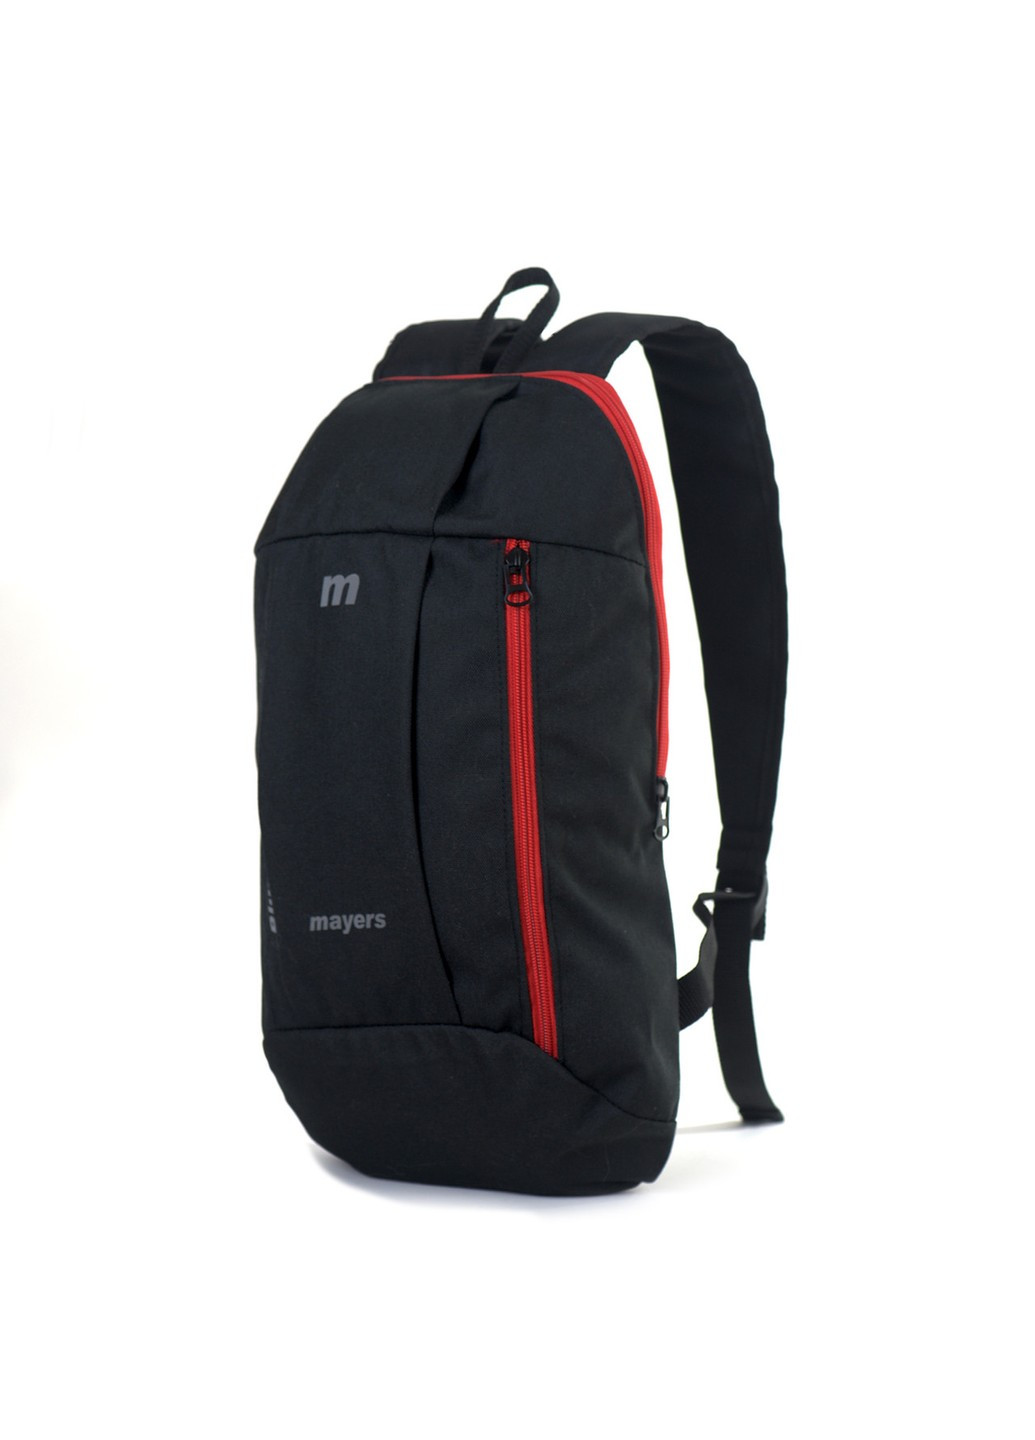 Молодежный рюкзак черный с красной молнией в спортивном стиле среднего размера практичный легкий No Brand (258591297)